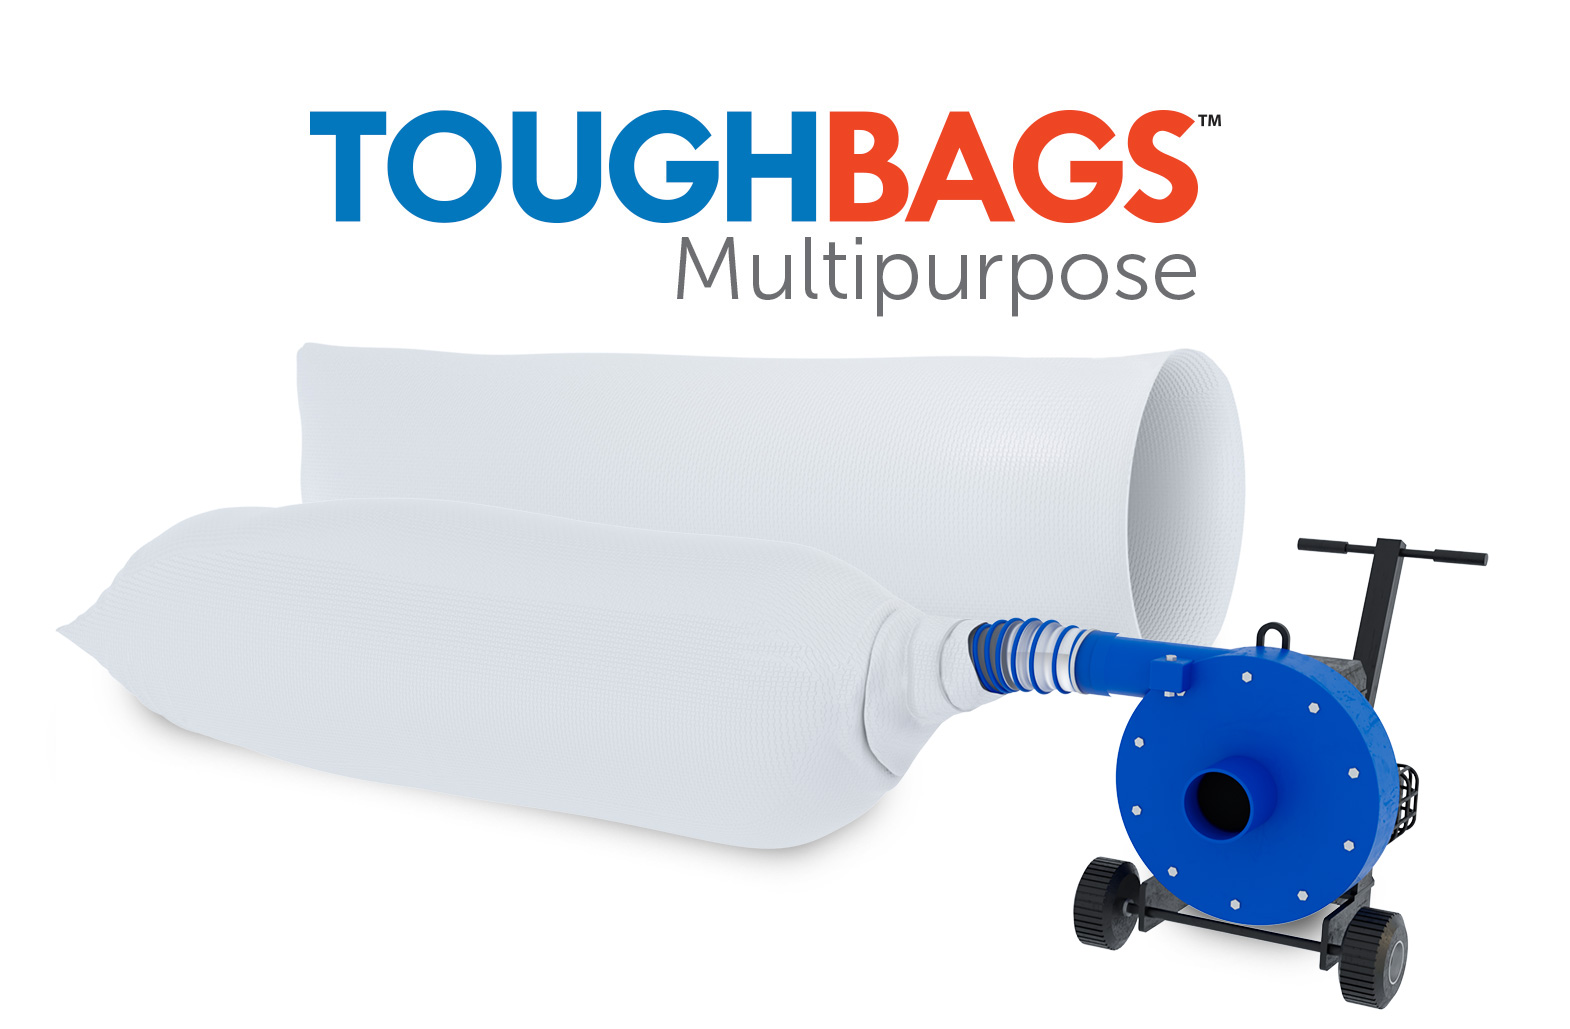 Multipurpose insulaton removal bag